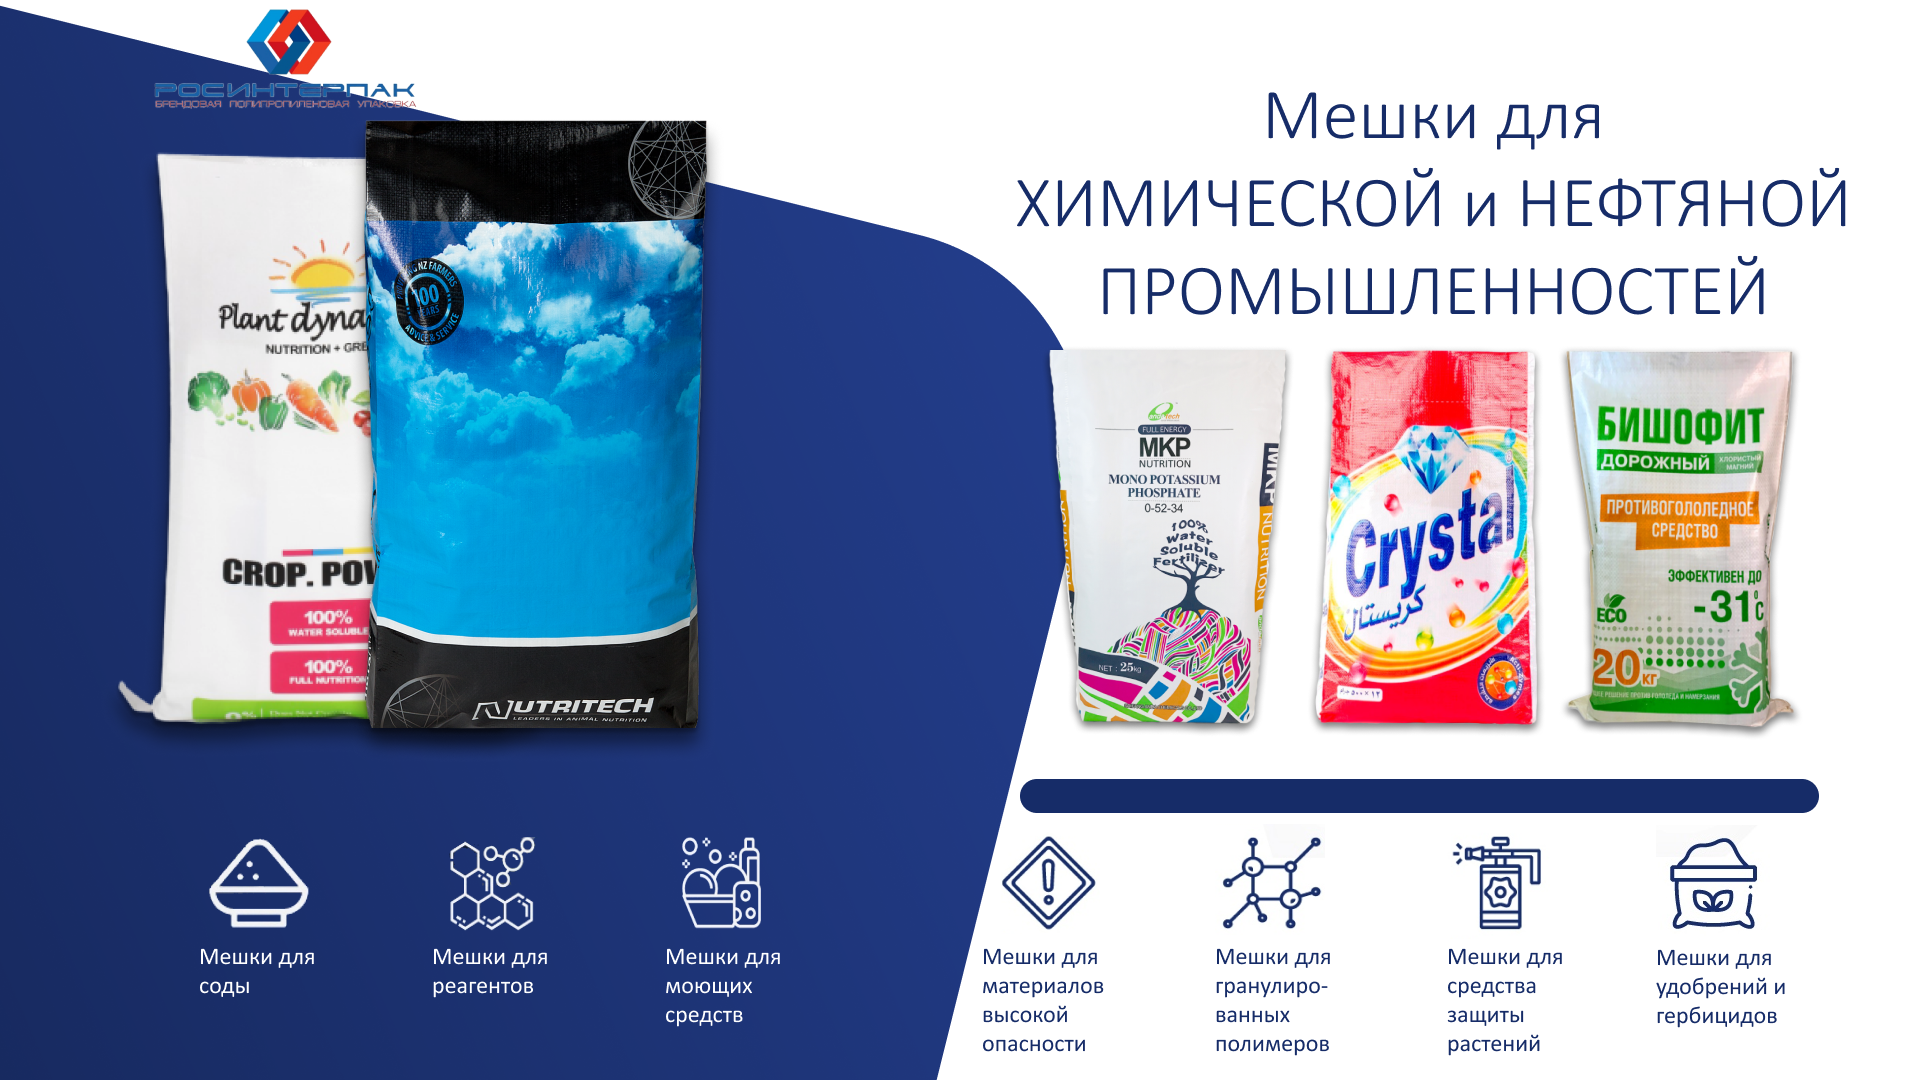 Мешки для химической продукции: безопасность и надежность в упаковке химических веществ